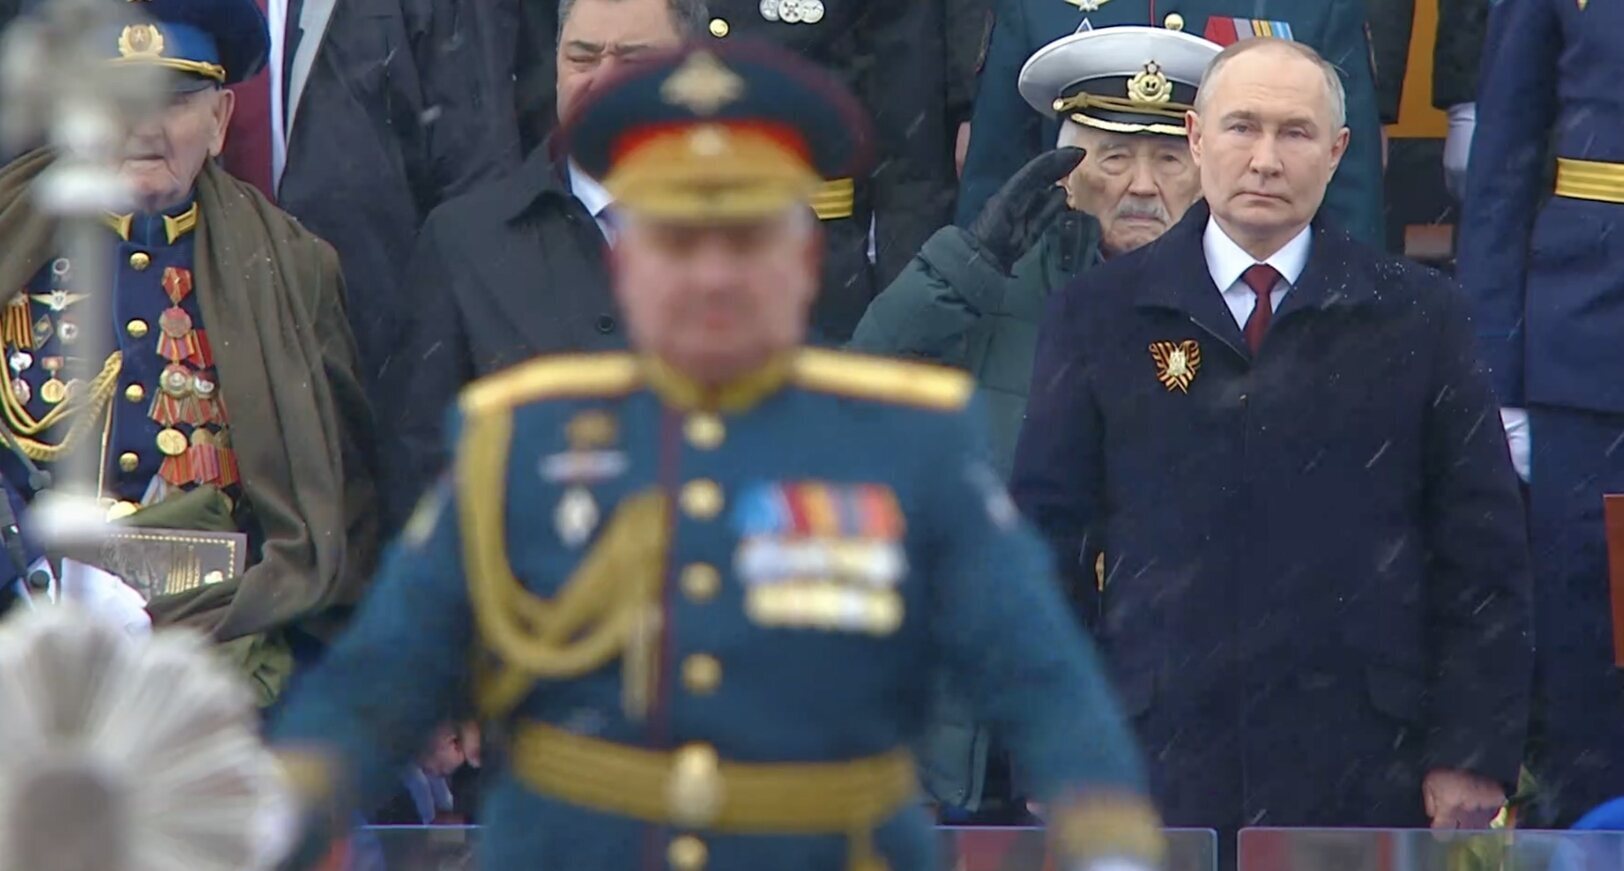 Tổng thống Vladimir Putin thị sát lễ duyệt binh với tư cách là tổng tư lệnh lần thứ 21. Ảnh: Chụp màn hình 